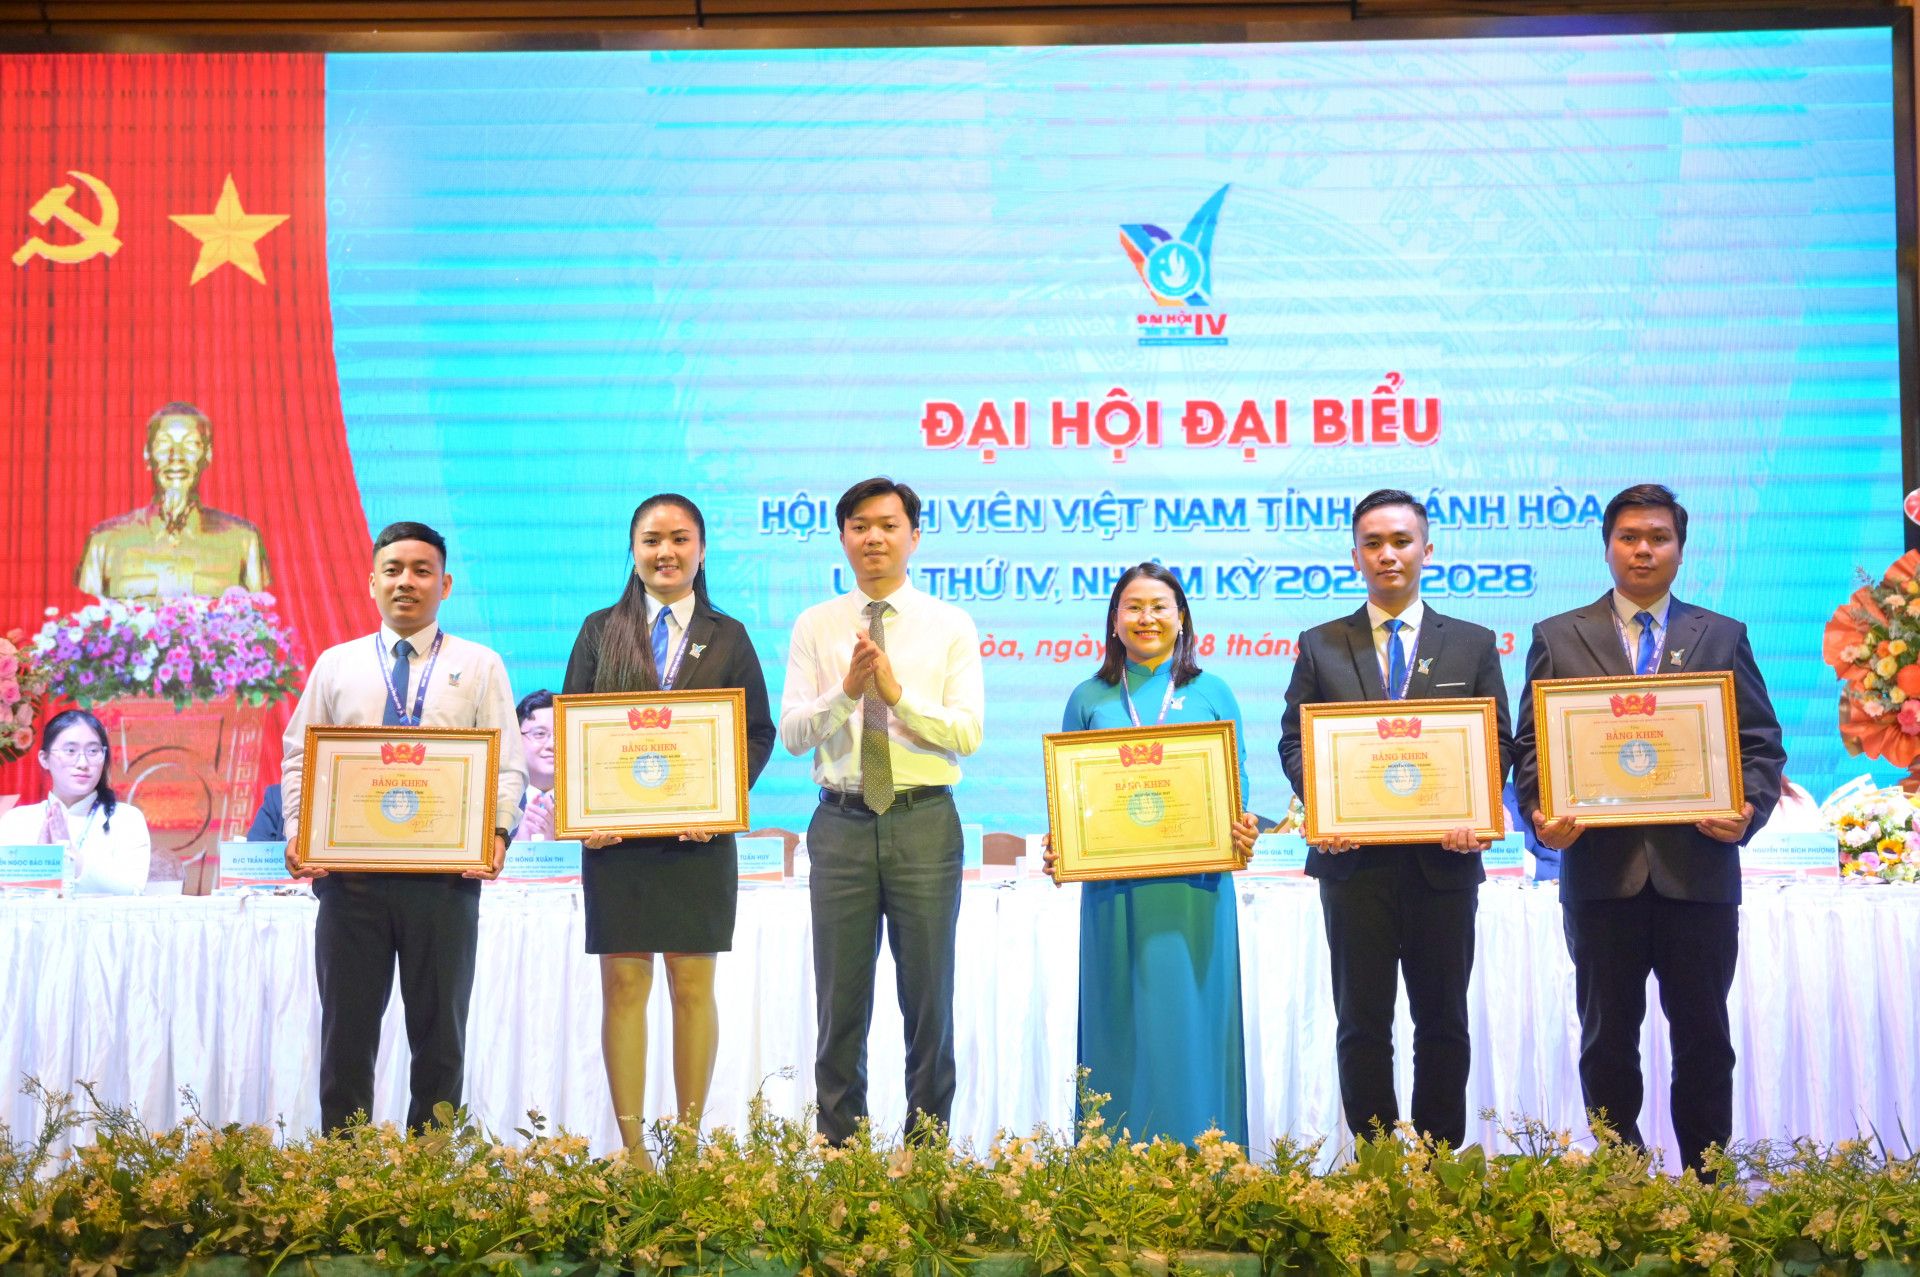 Hội Sinh viên Việt Nam trao bằng khen cho các tập thể, cá nhân có thành tích xuất sắc trong công tác hội và phong trào sinh viên nhiệm kỳ 2018 - 2023.